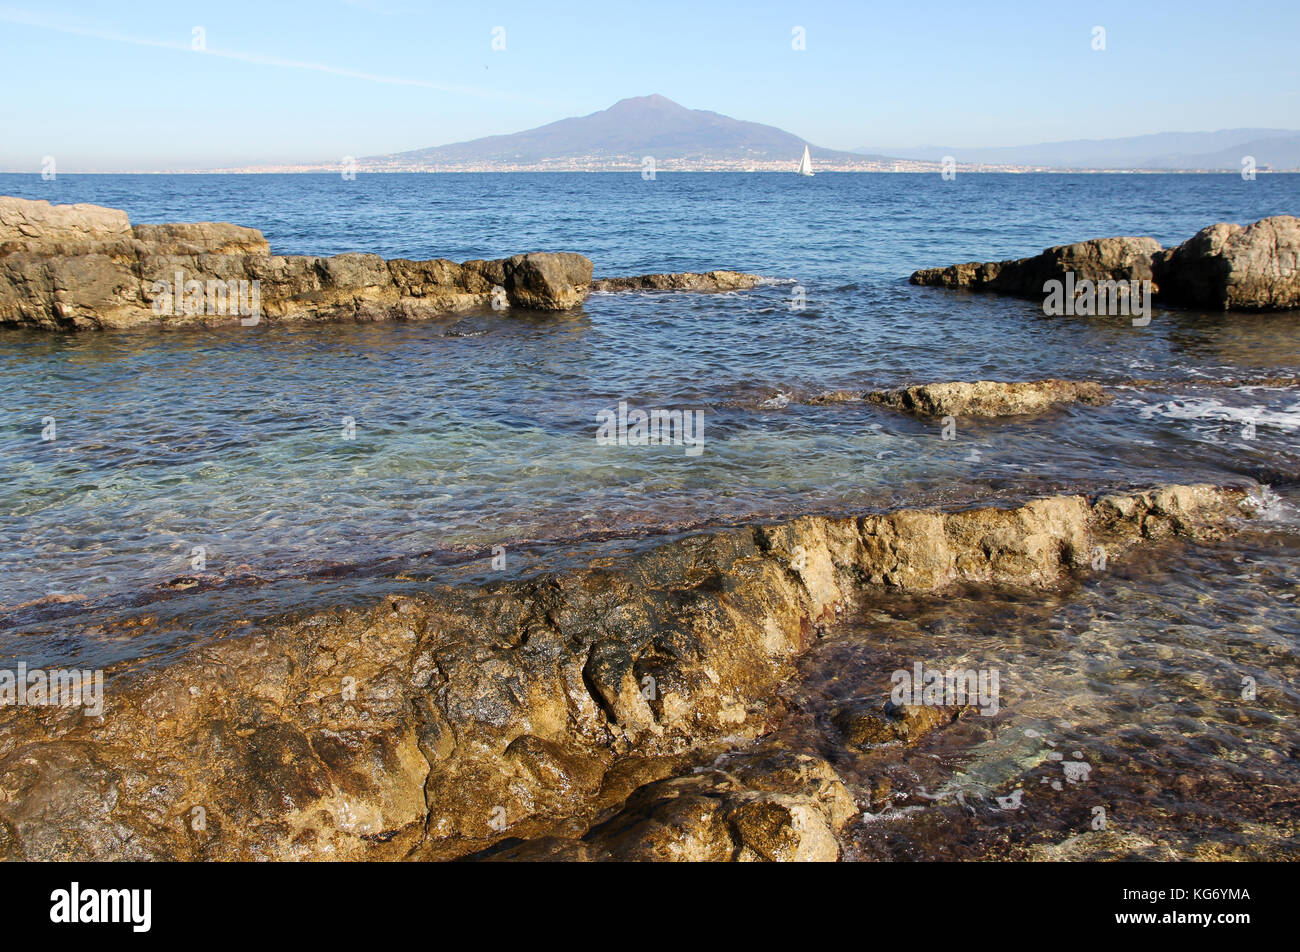 Monte Vesubio bahía de Nápoles, Italia Foto de stock